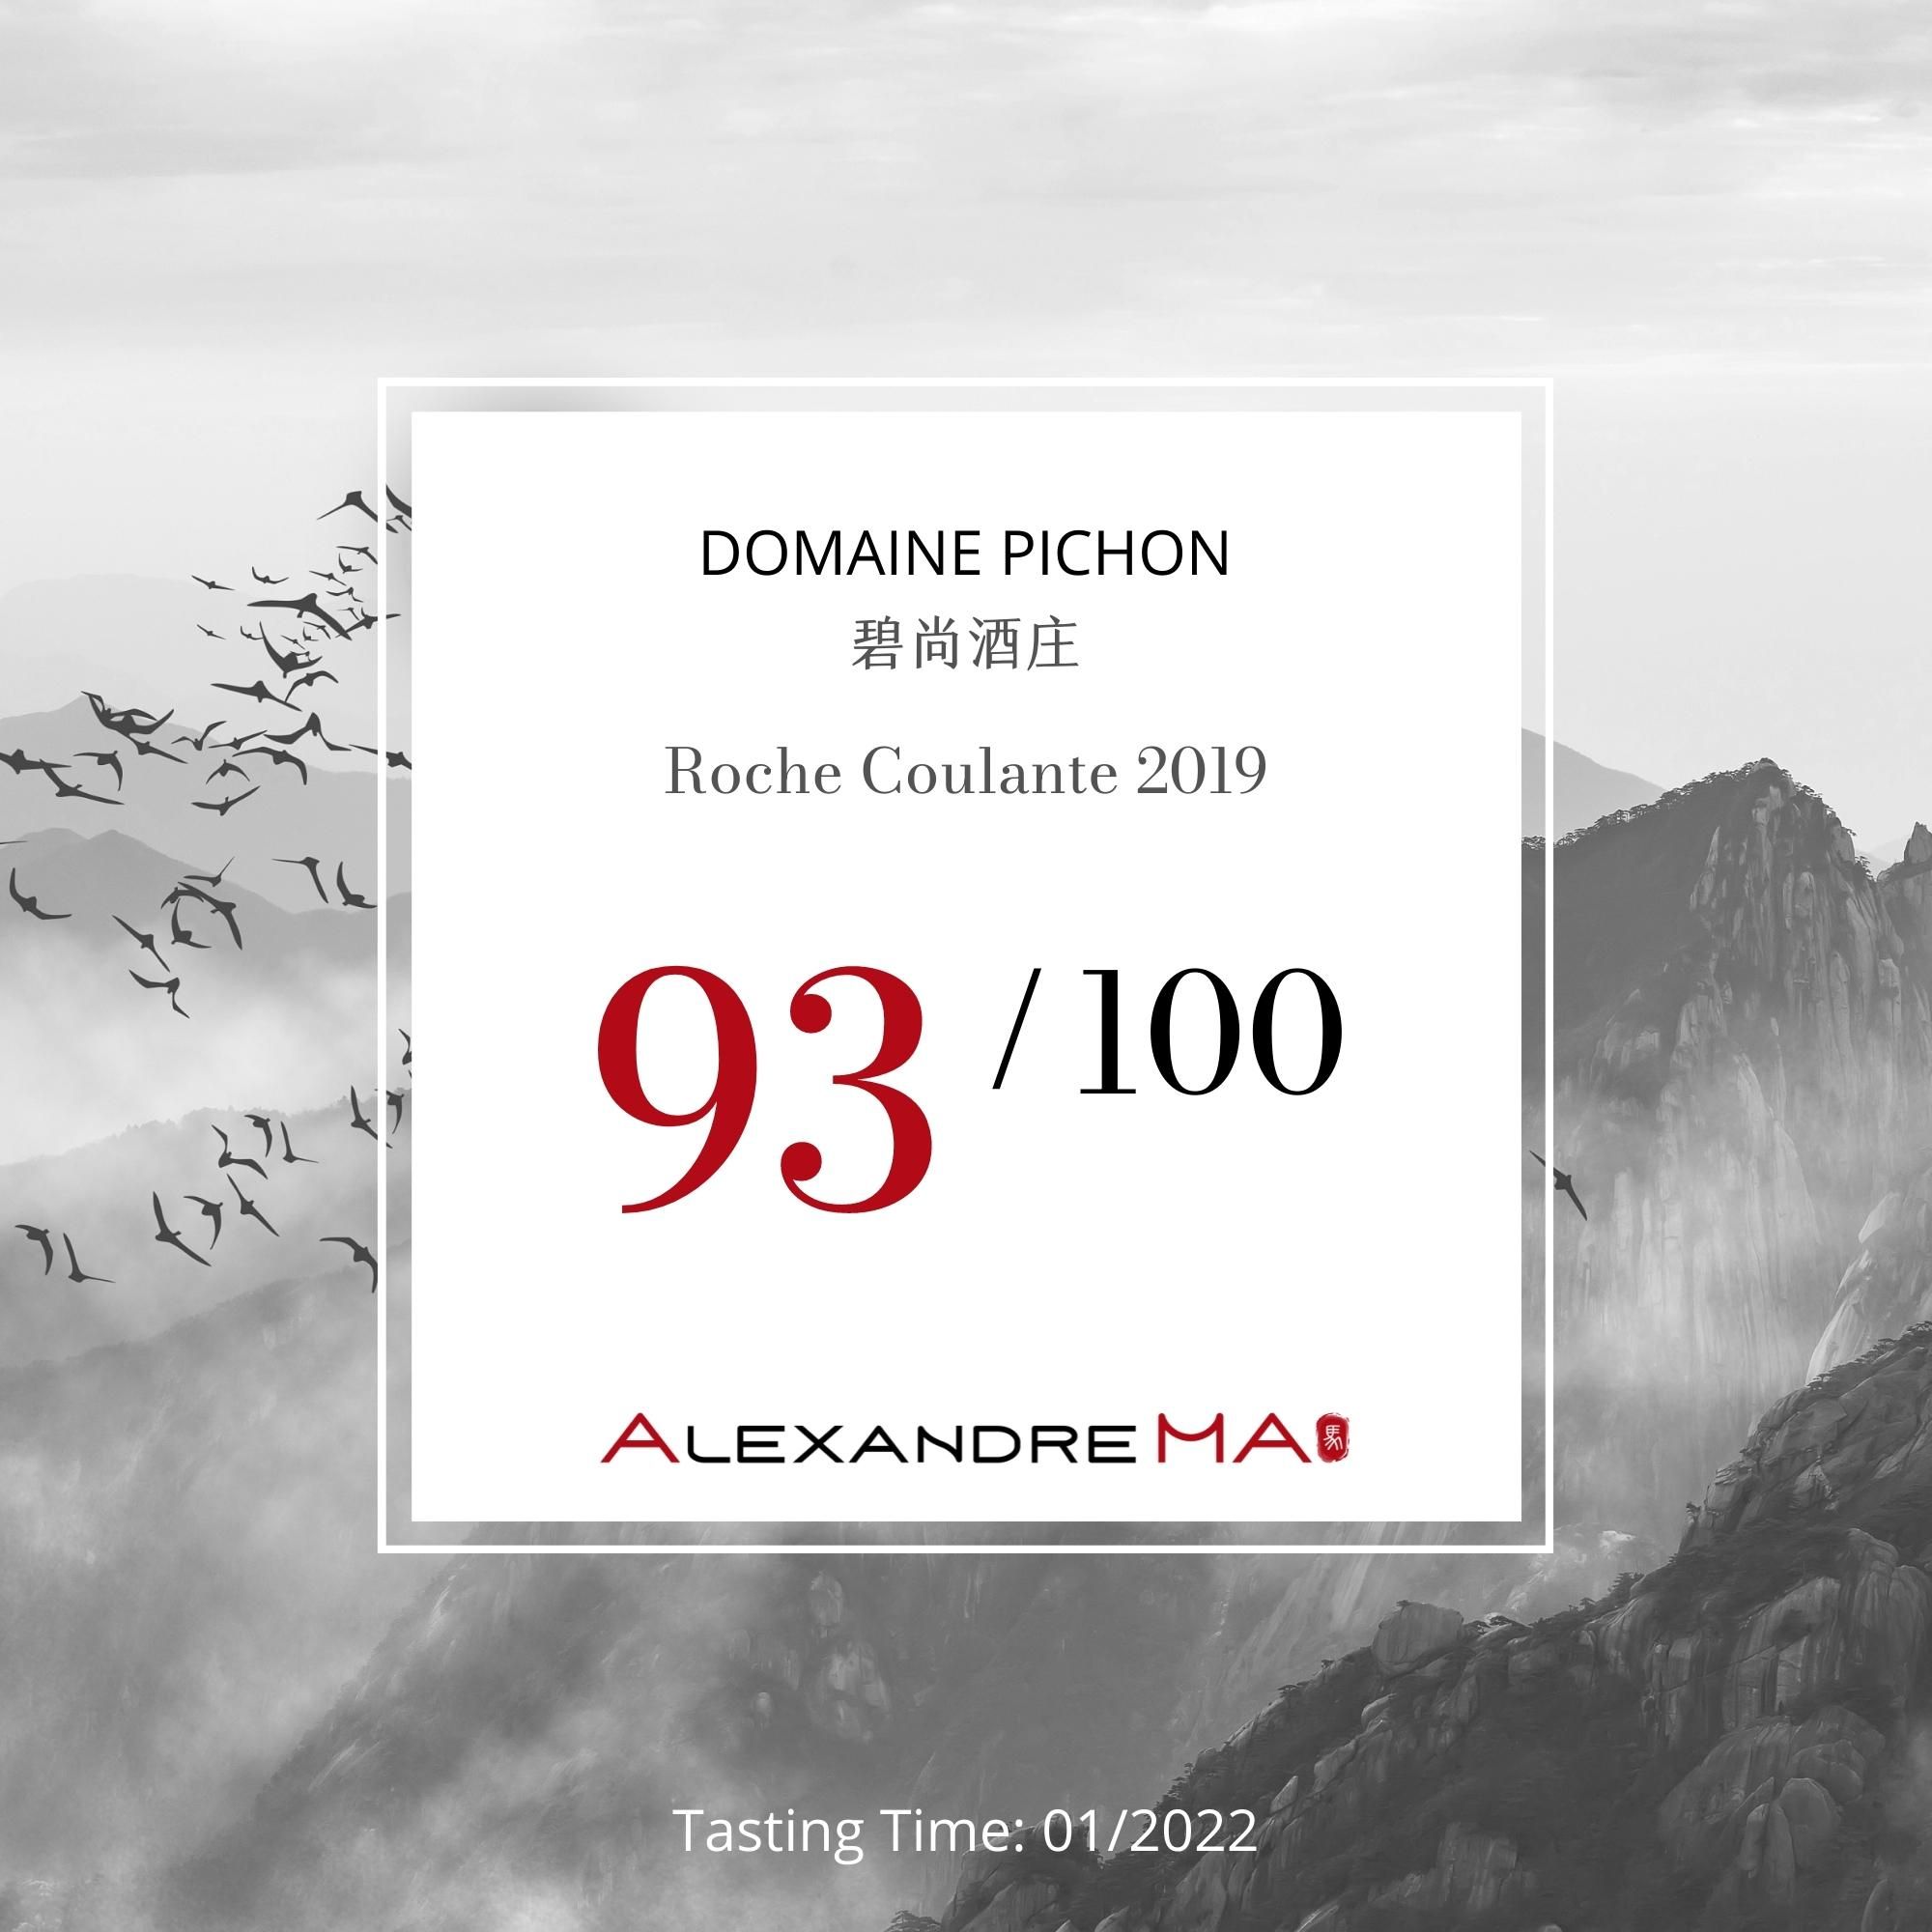 Domaine Pichon-Roche Coulante 2019 - Alexandre MA